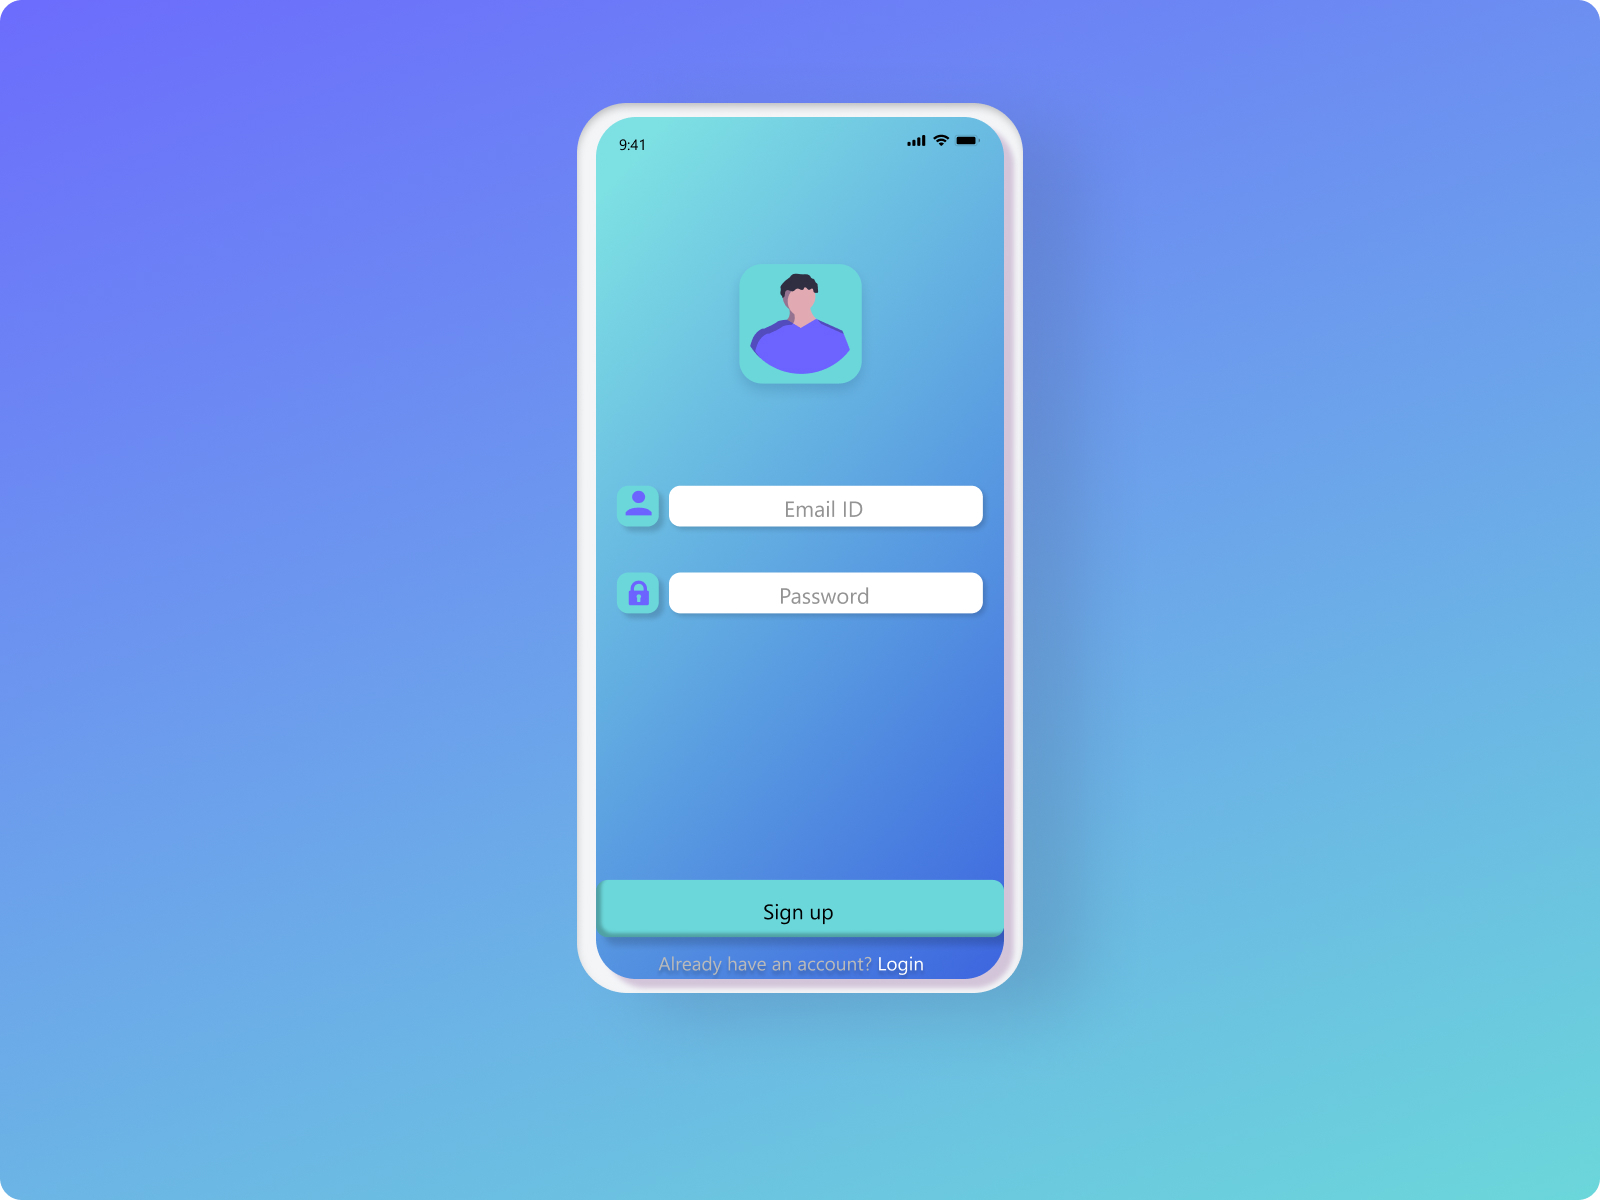 App Login UI Design by Ketan Jadhav on Dribbble